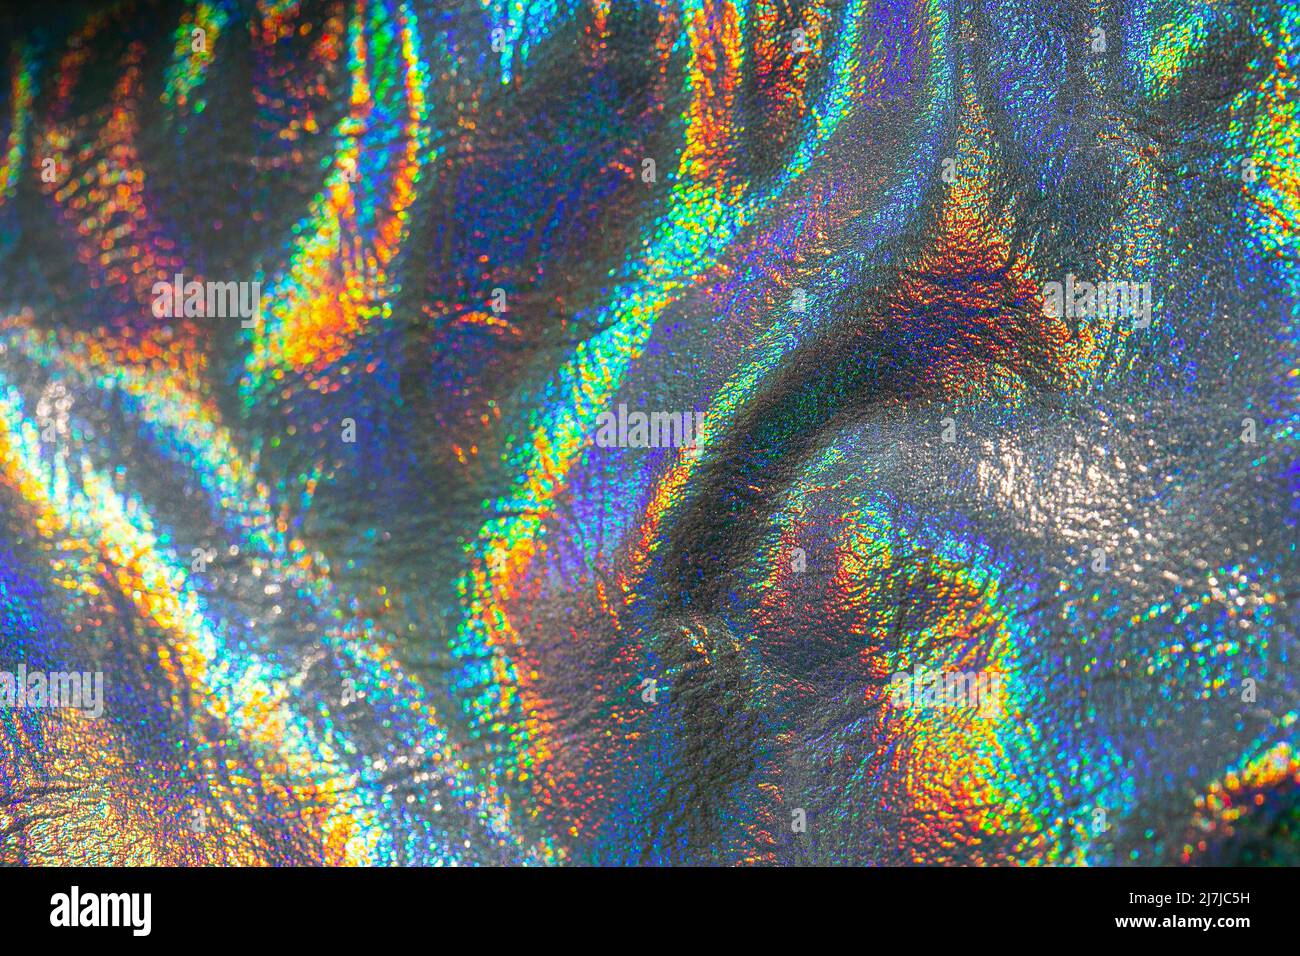 Tapete in Silber, lila und grün Farben.Metall holographischen Material.Holographischen Hintergrund. Textur mit schillernden Wellen und Falten Stockfoto